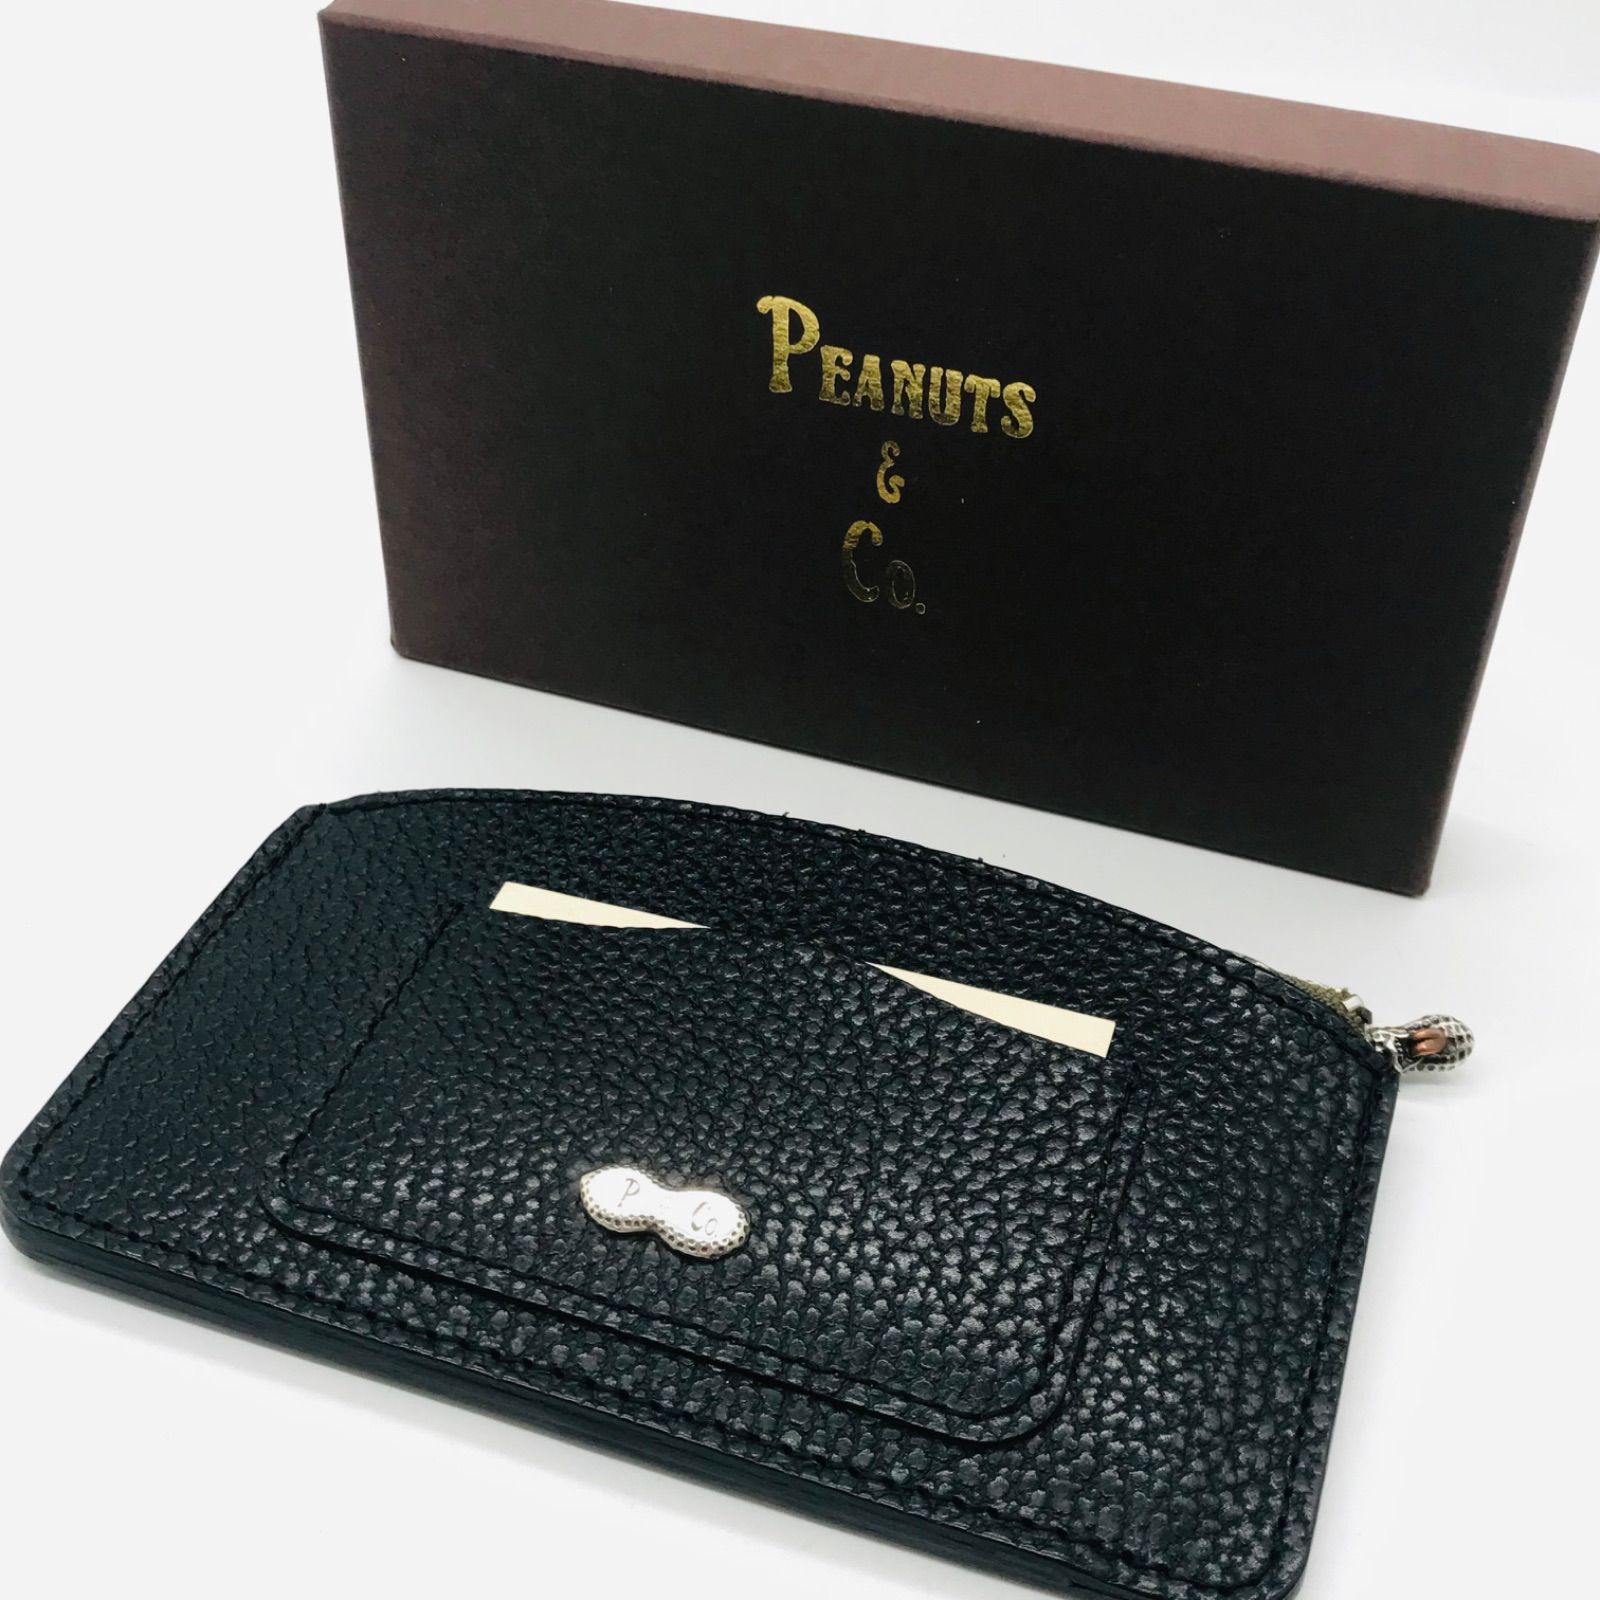 PEANUTS&Co. ピーナッツカンパニー 財布 短財布 ブラック 美品